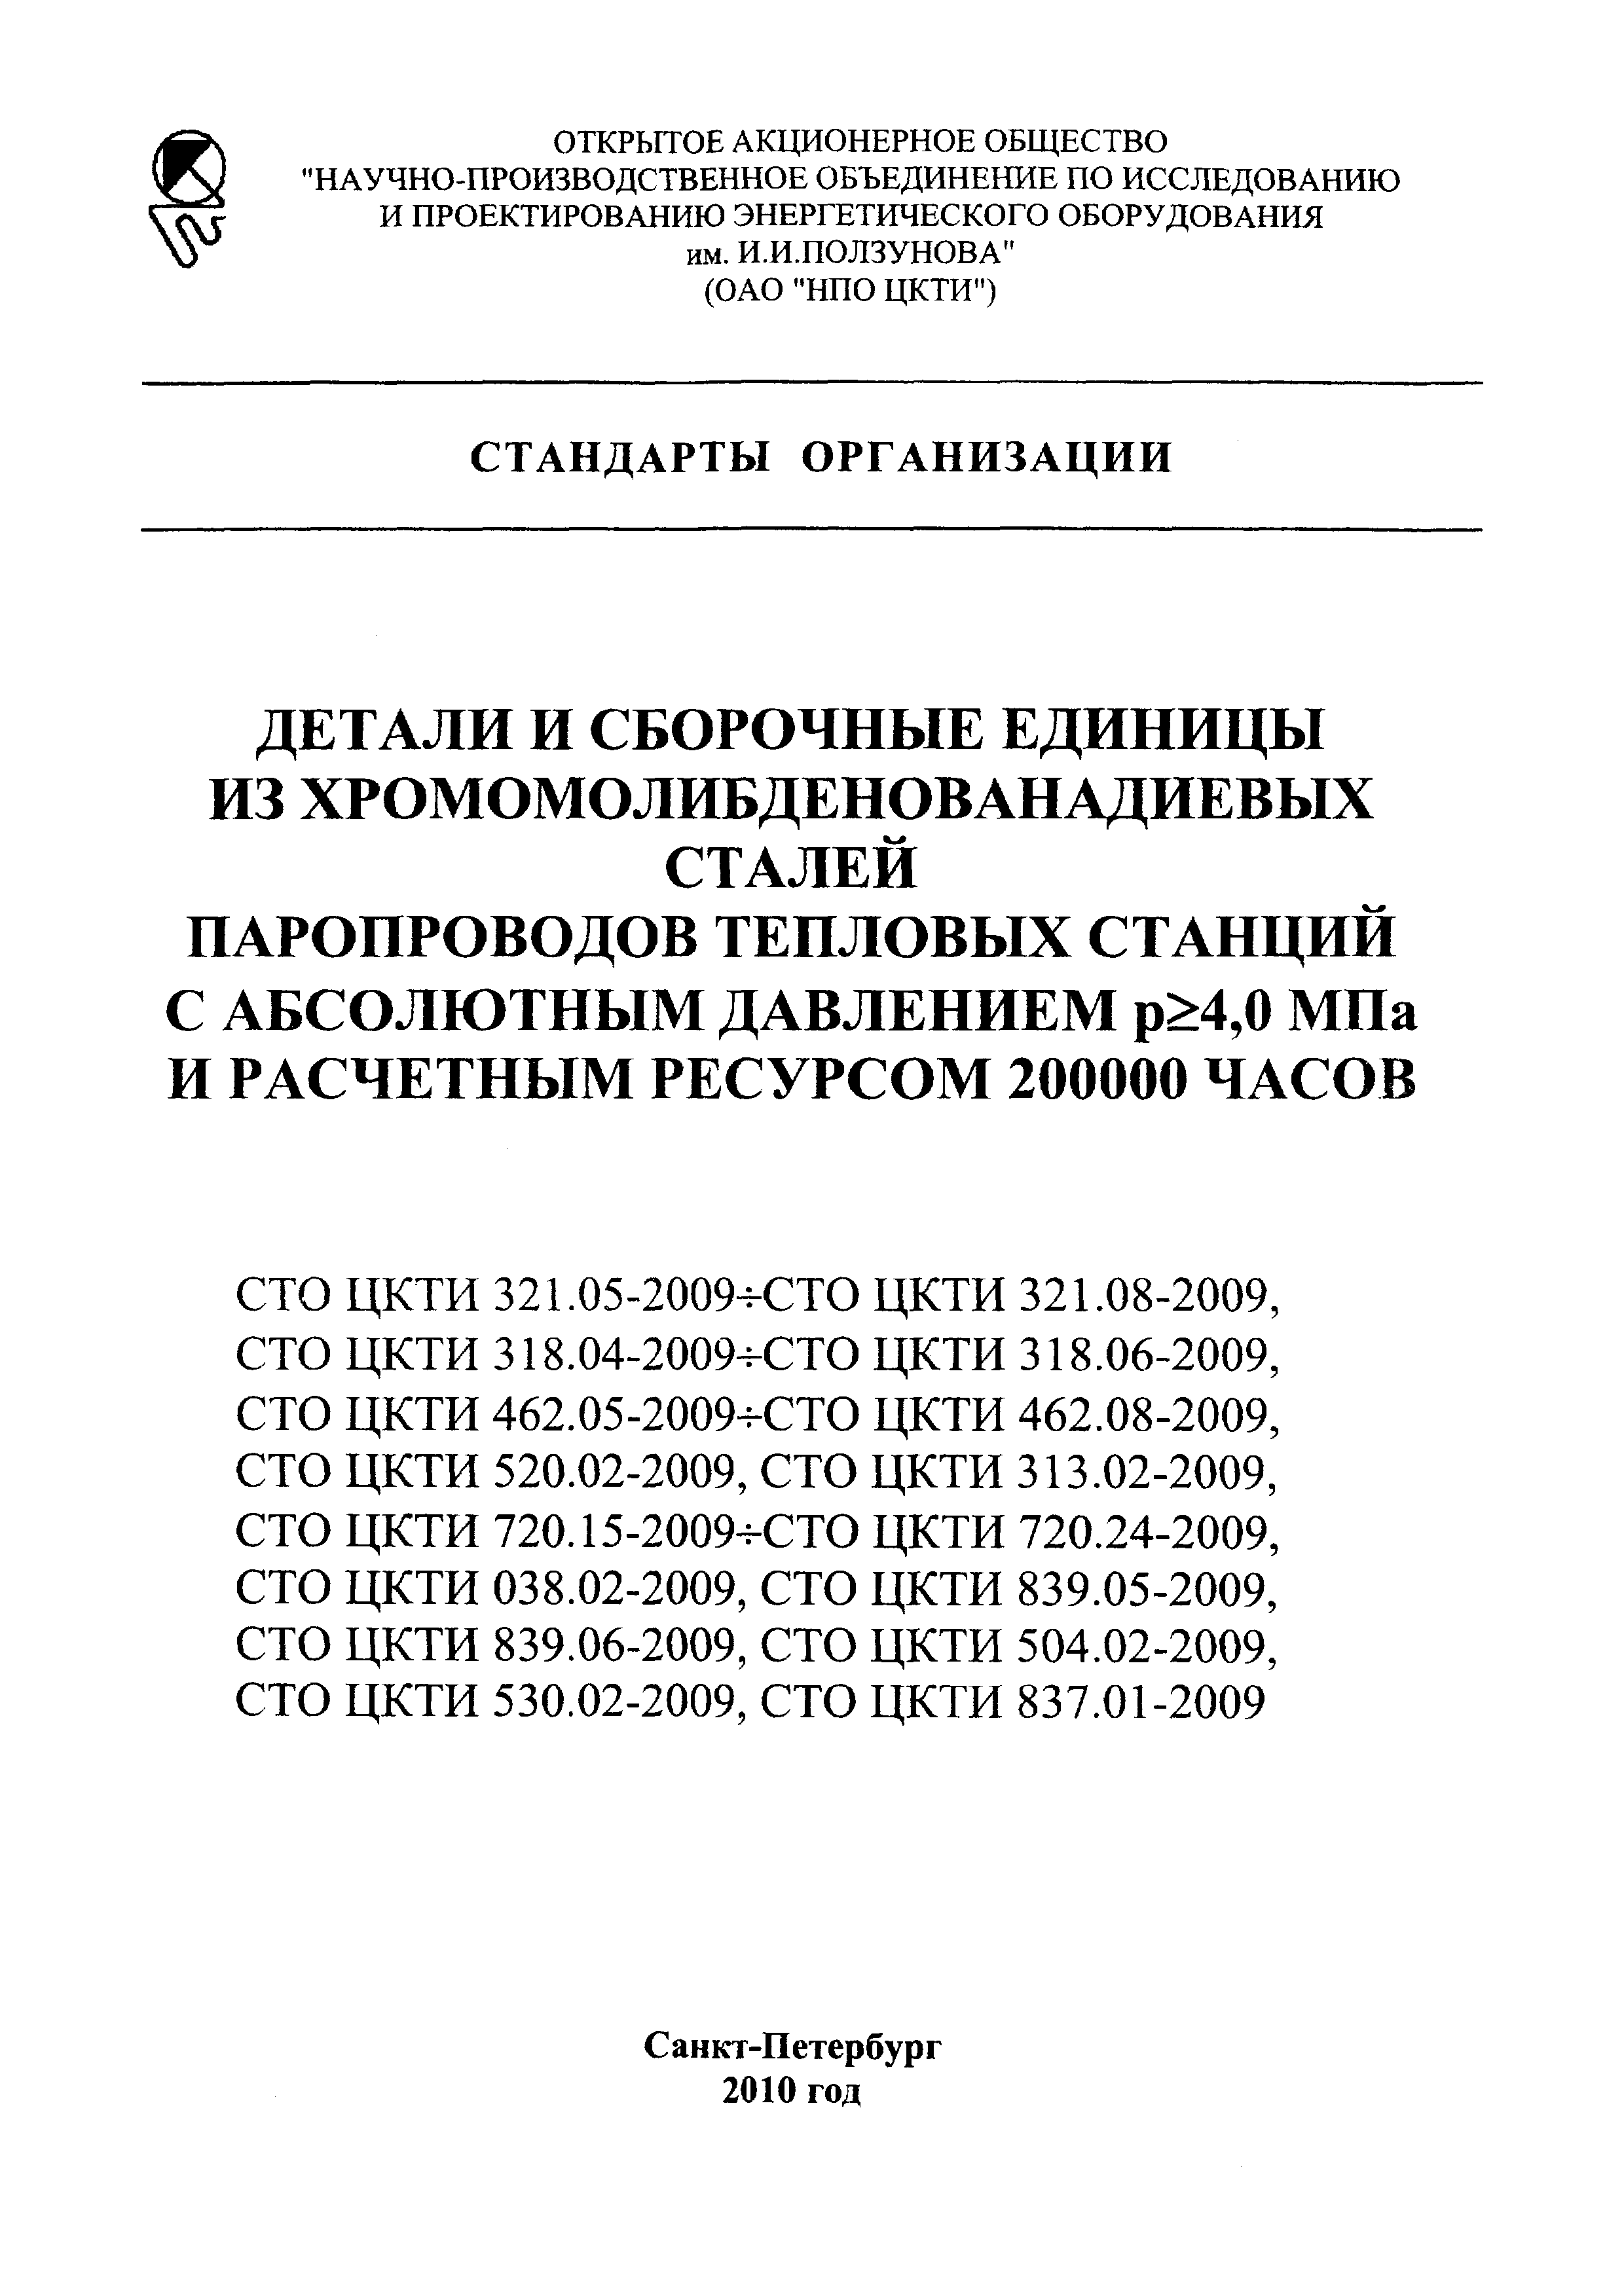 СТО ЦКТИ 313.02-2009